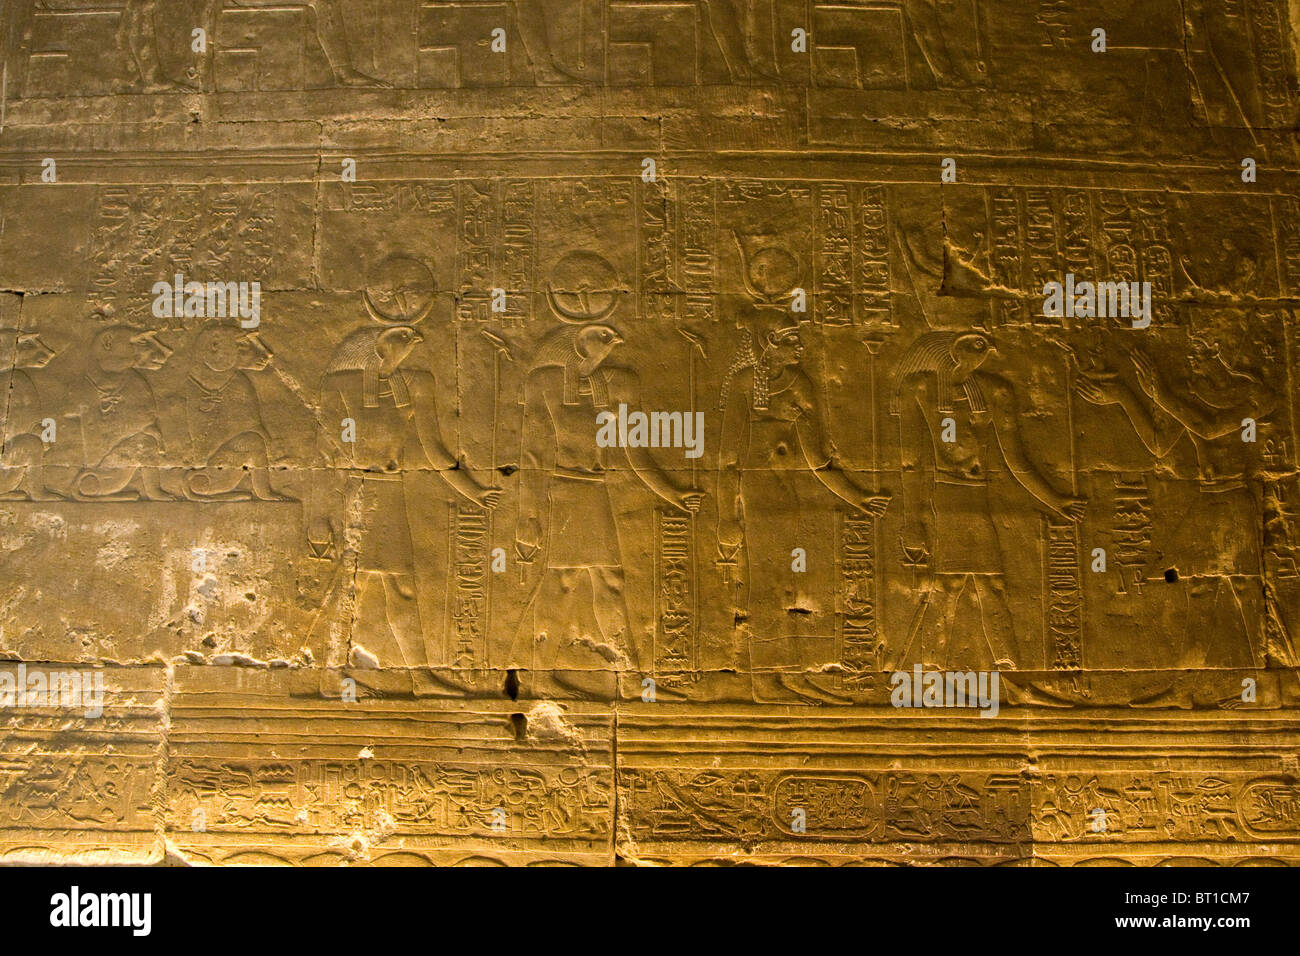 El templo de Edfu Horus Egipto jeroglíficos 'vieja ruina Faraón de piedra en la Escultura de piedra de antigüedades egipcias antiguas "Cultura" Decoración Foto de stock